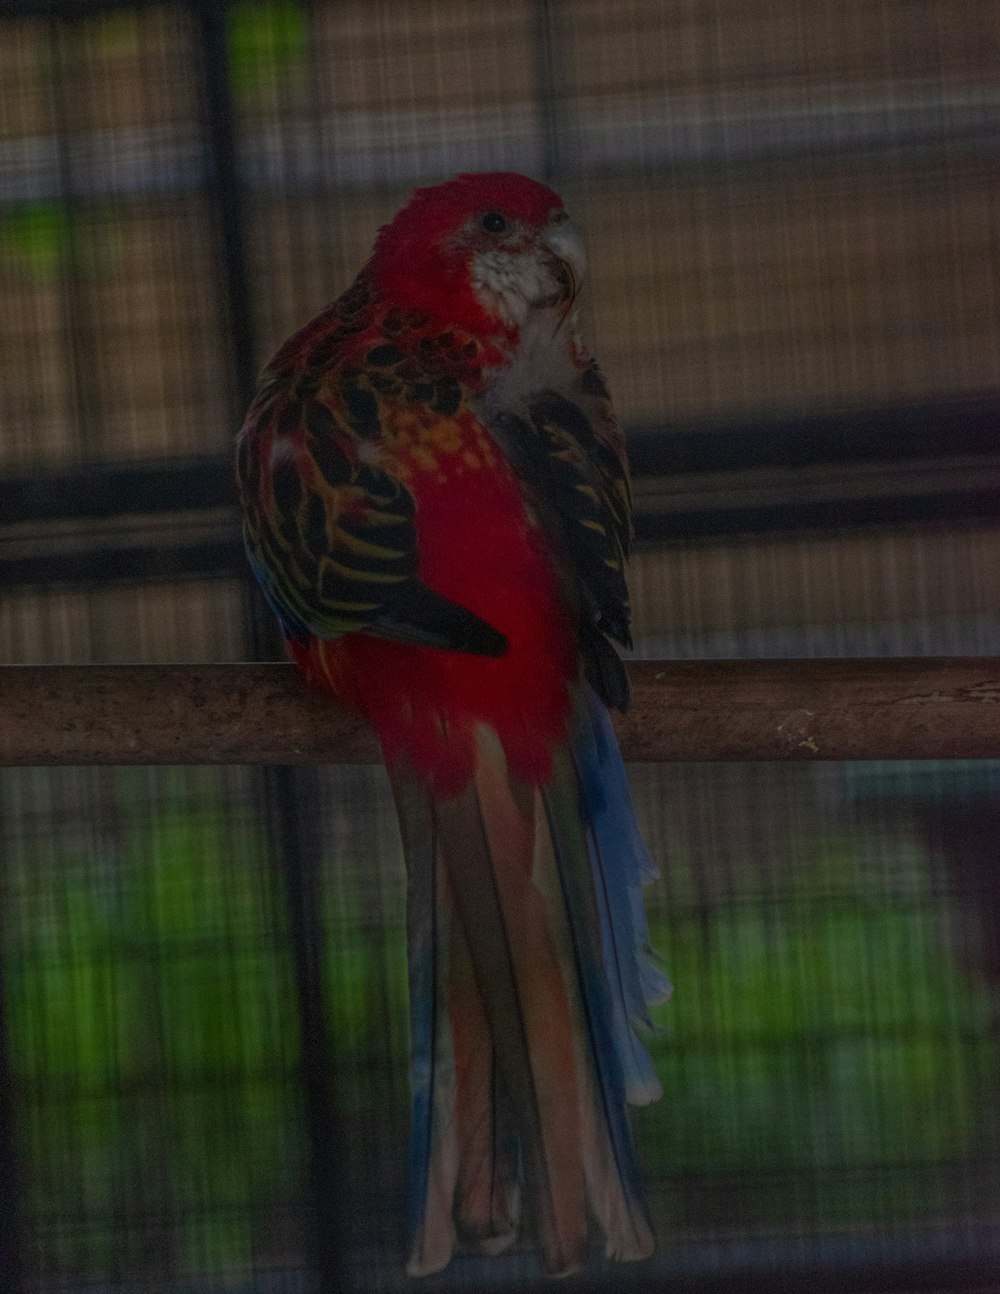 Ein rot-schwarzer Vogel sitzt auf einer hölzernen Stange